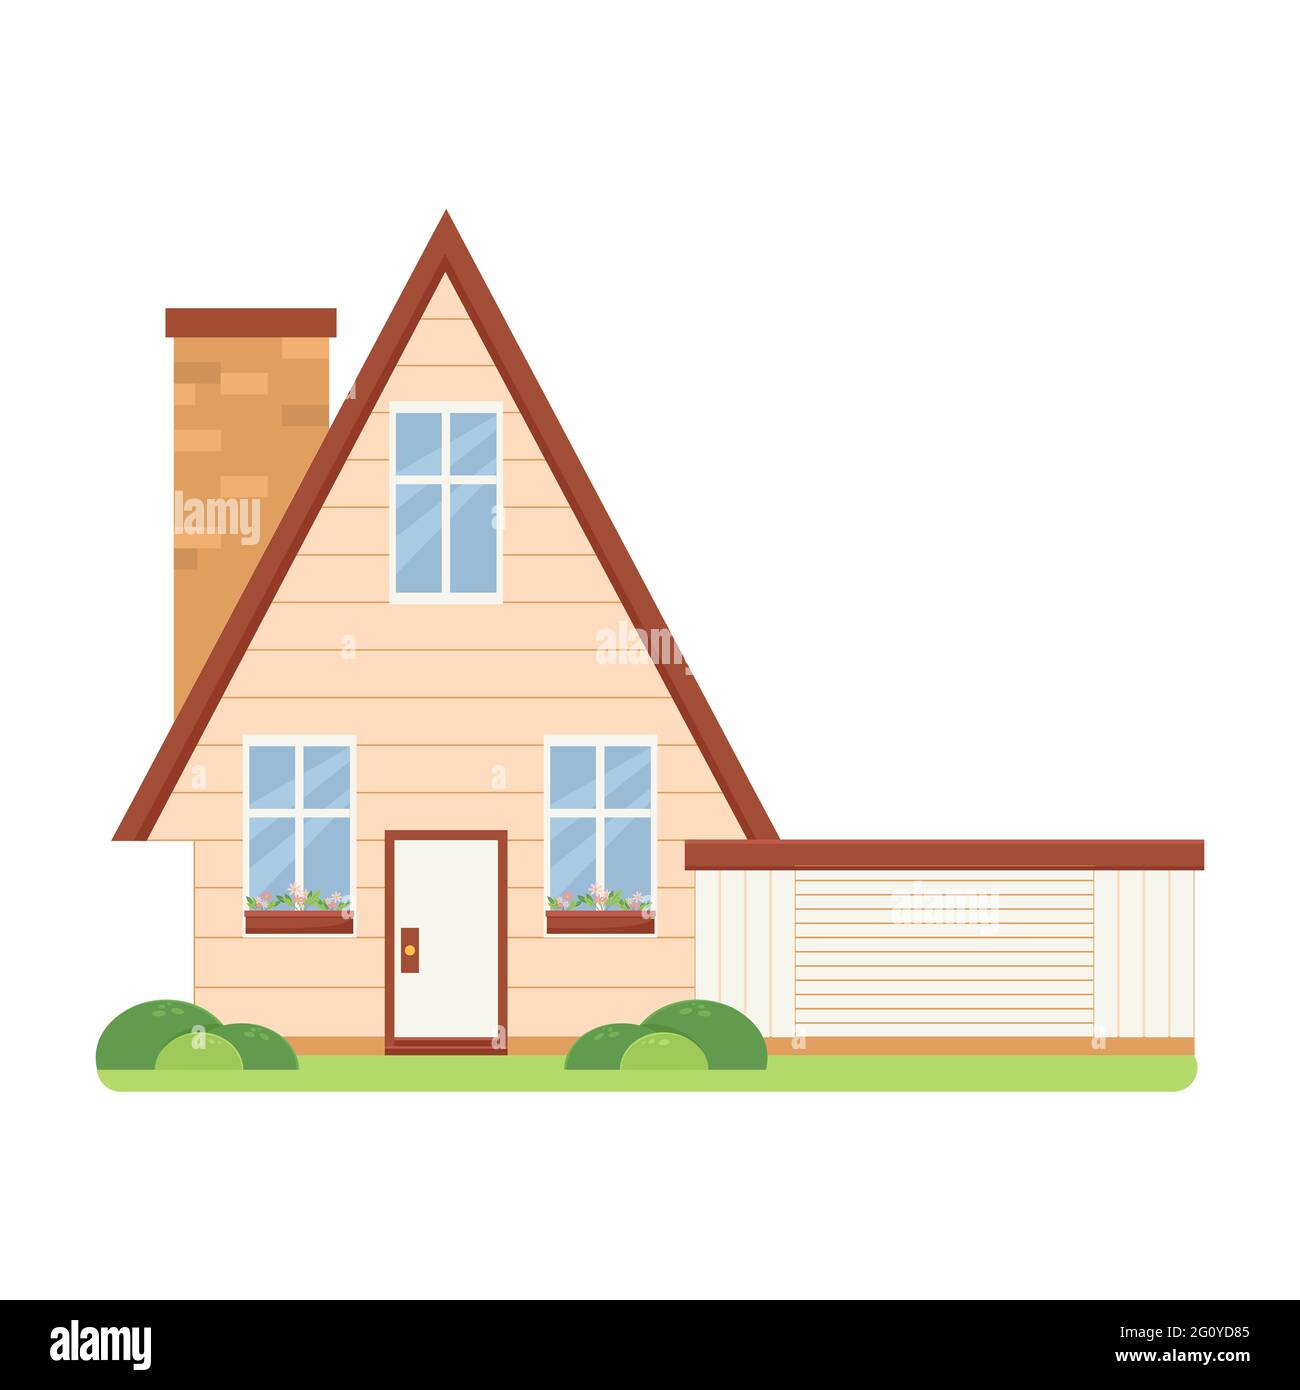 Maison familiale de style plat, maison avec garage, fleurs sur le rebord de la fenêtre Illustration de Vecteur